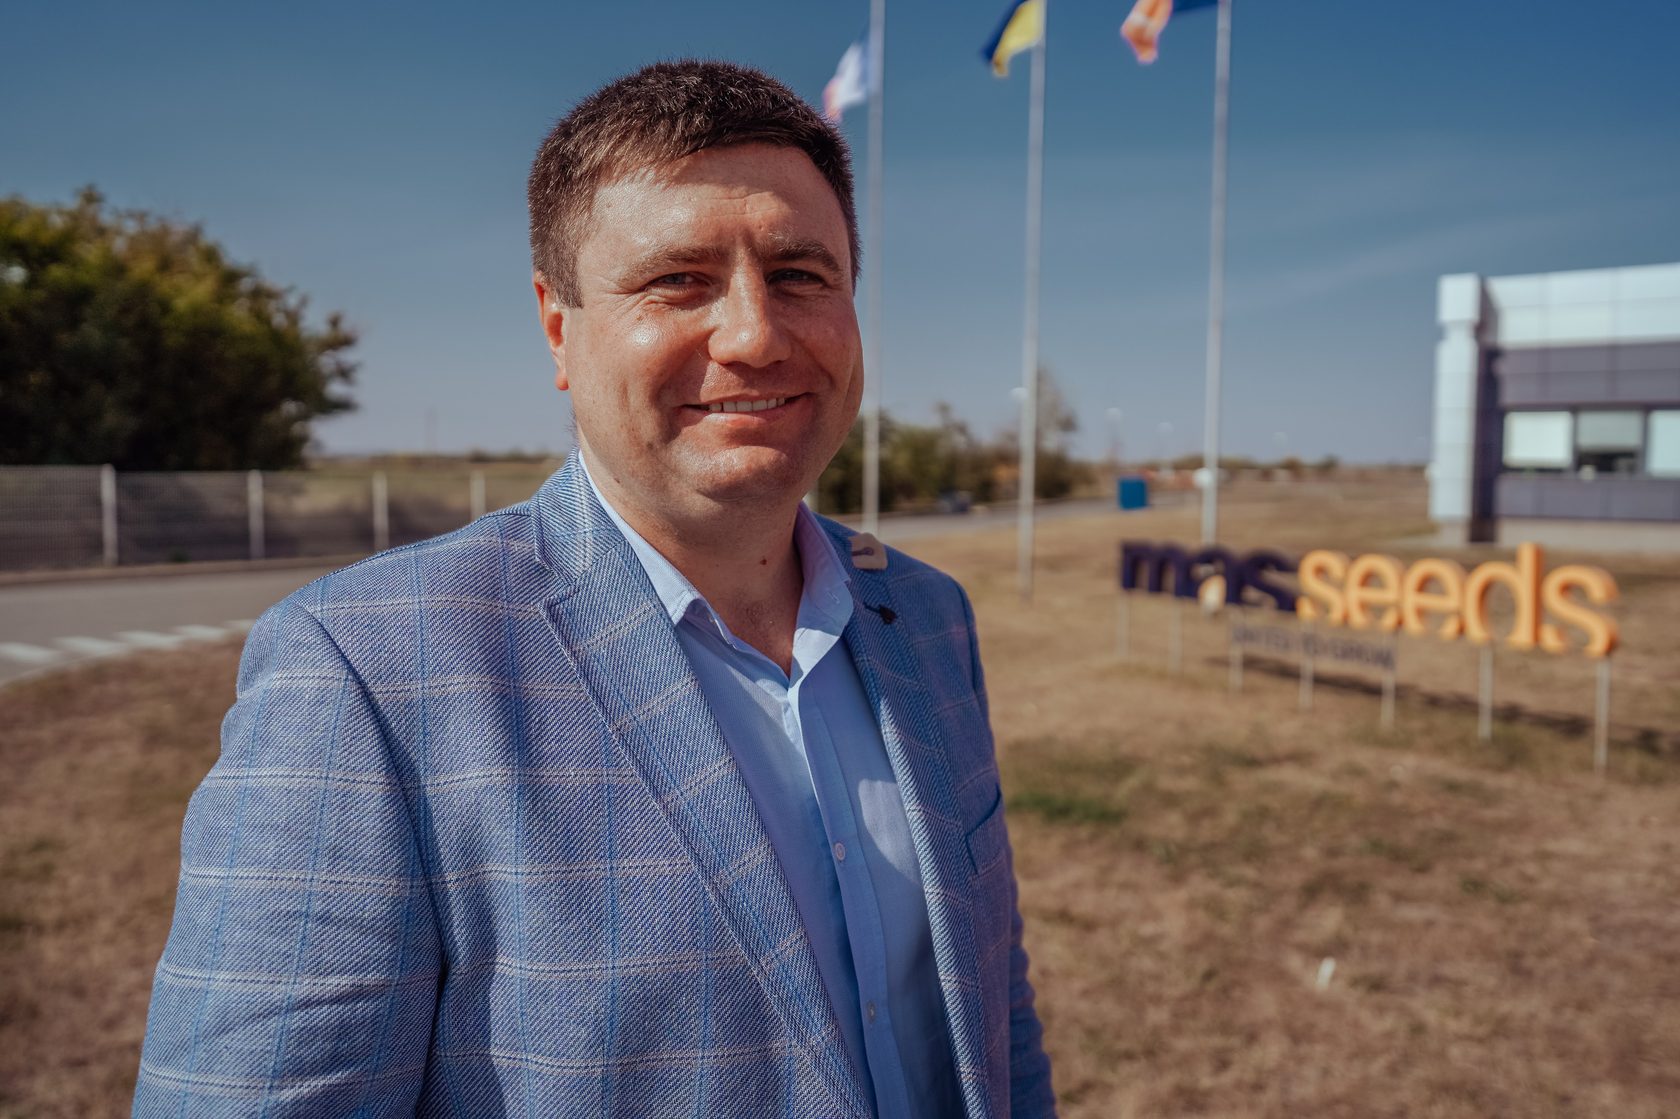 Николай Черныш, директор по производству «MAS Seeds Украина»